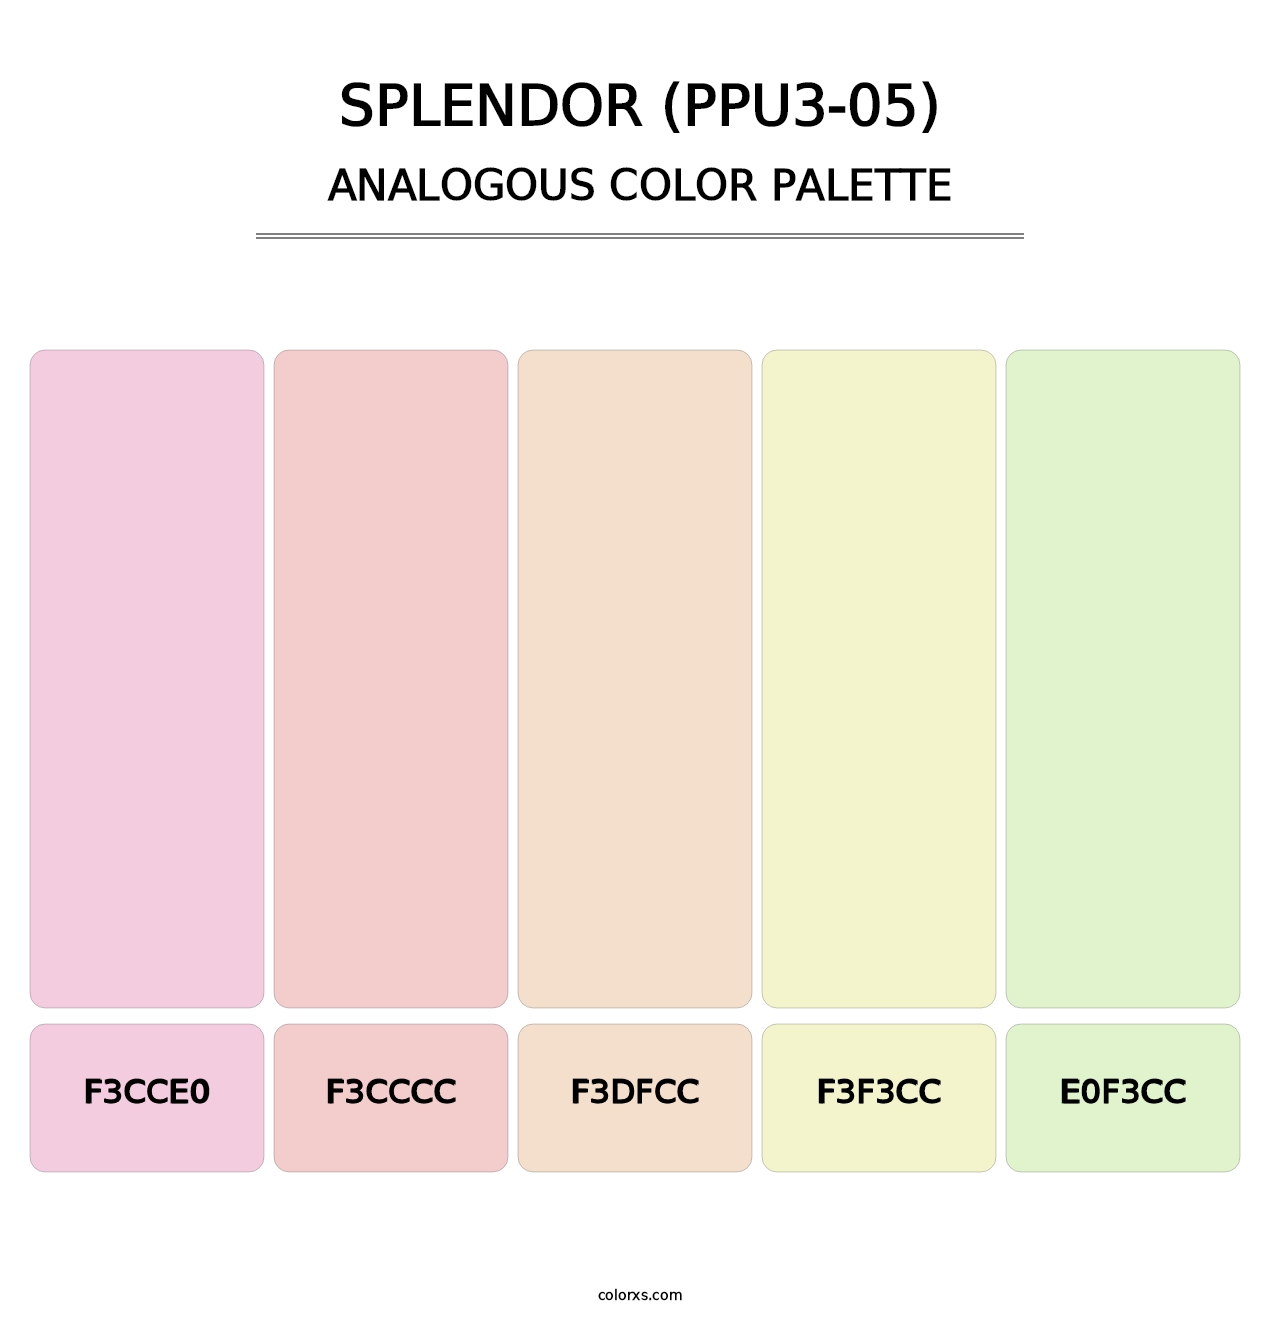 Splendor (PPU3-05) - Analogous Color Palette